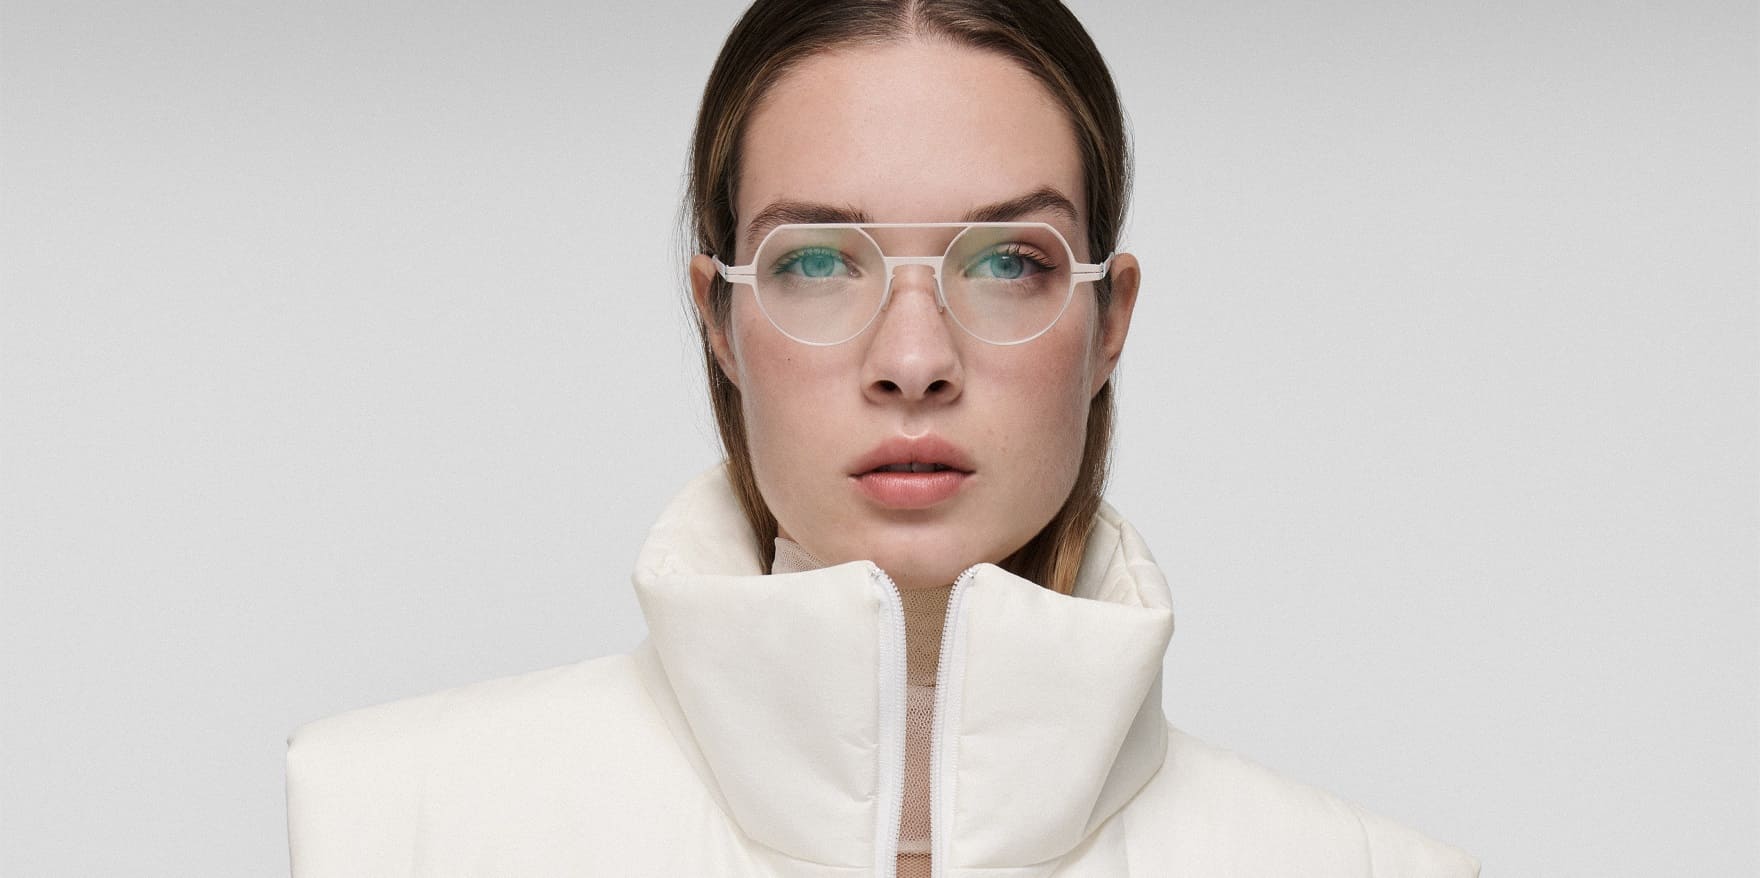 Junge Frau mit weißer Lool-Brille und weißem modernen Outfit. Optiker GRONDE Sehen & Hören